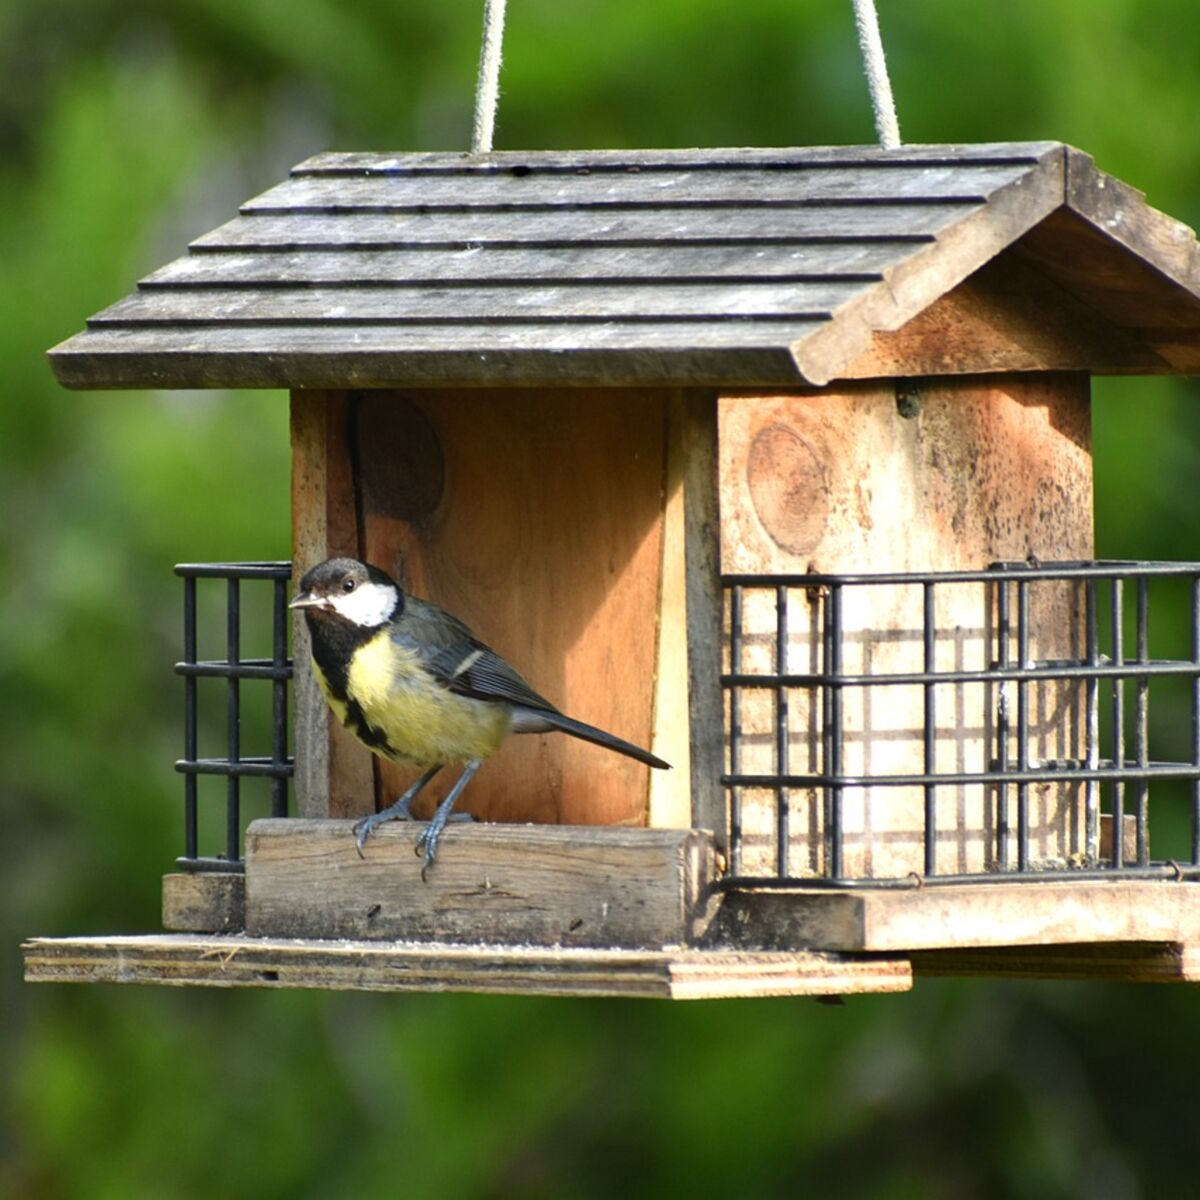 Aider les oiseaux à passer l'hiver + recette boules de graisse maison -  Carnet Green – bien-être au naturel, zéro déchet et écologie